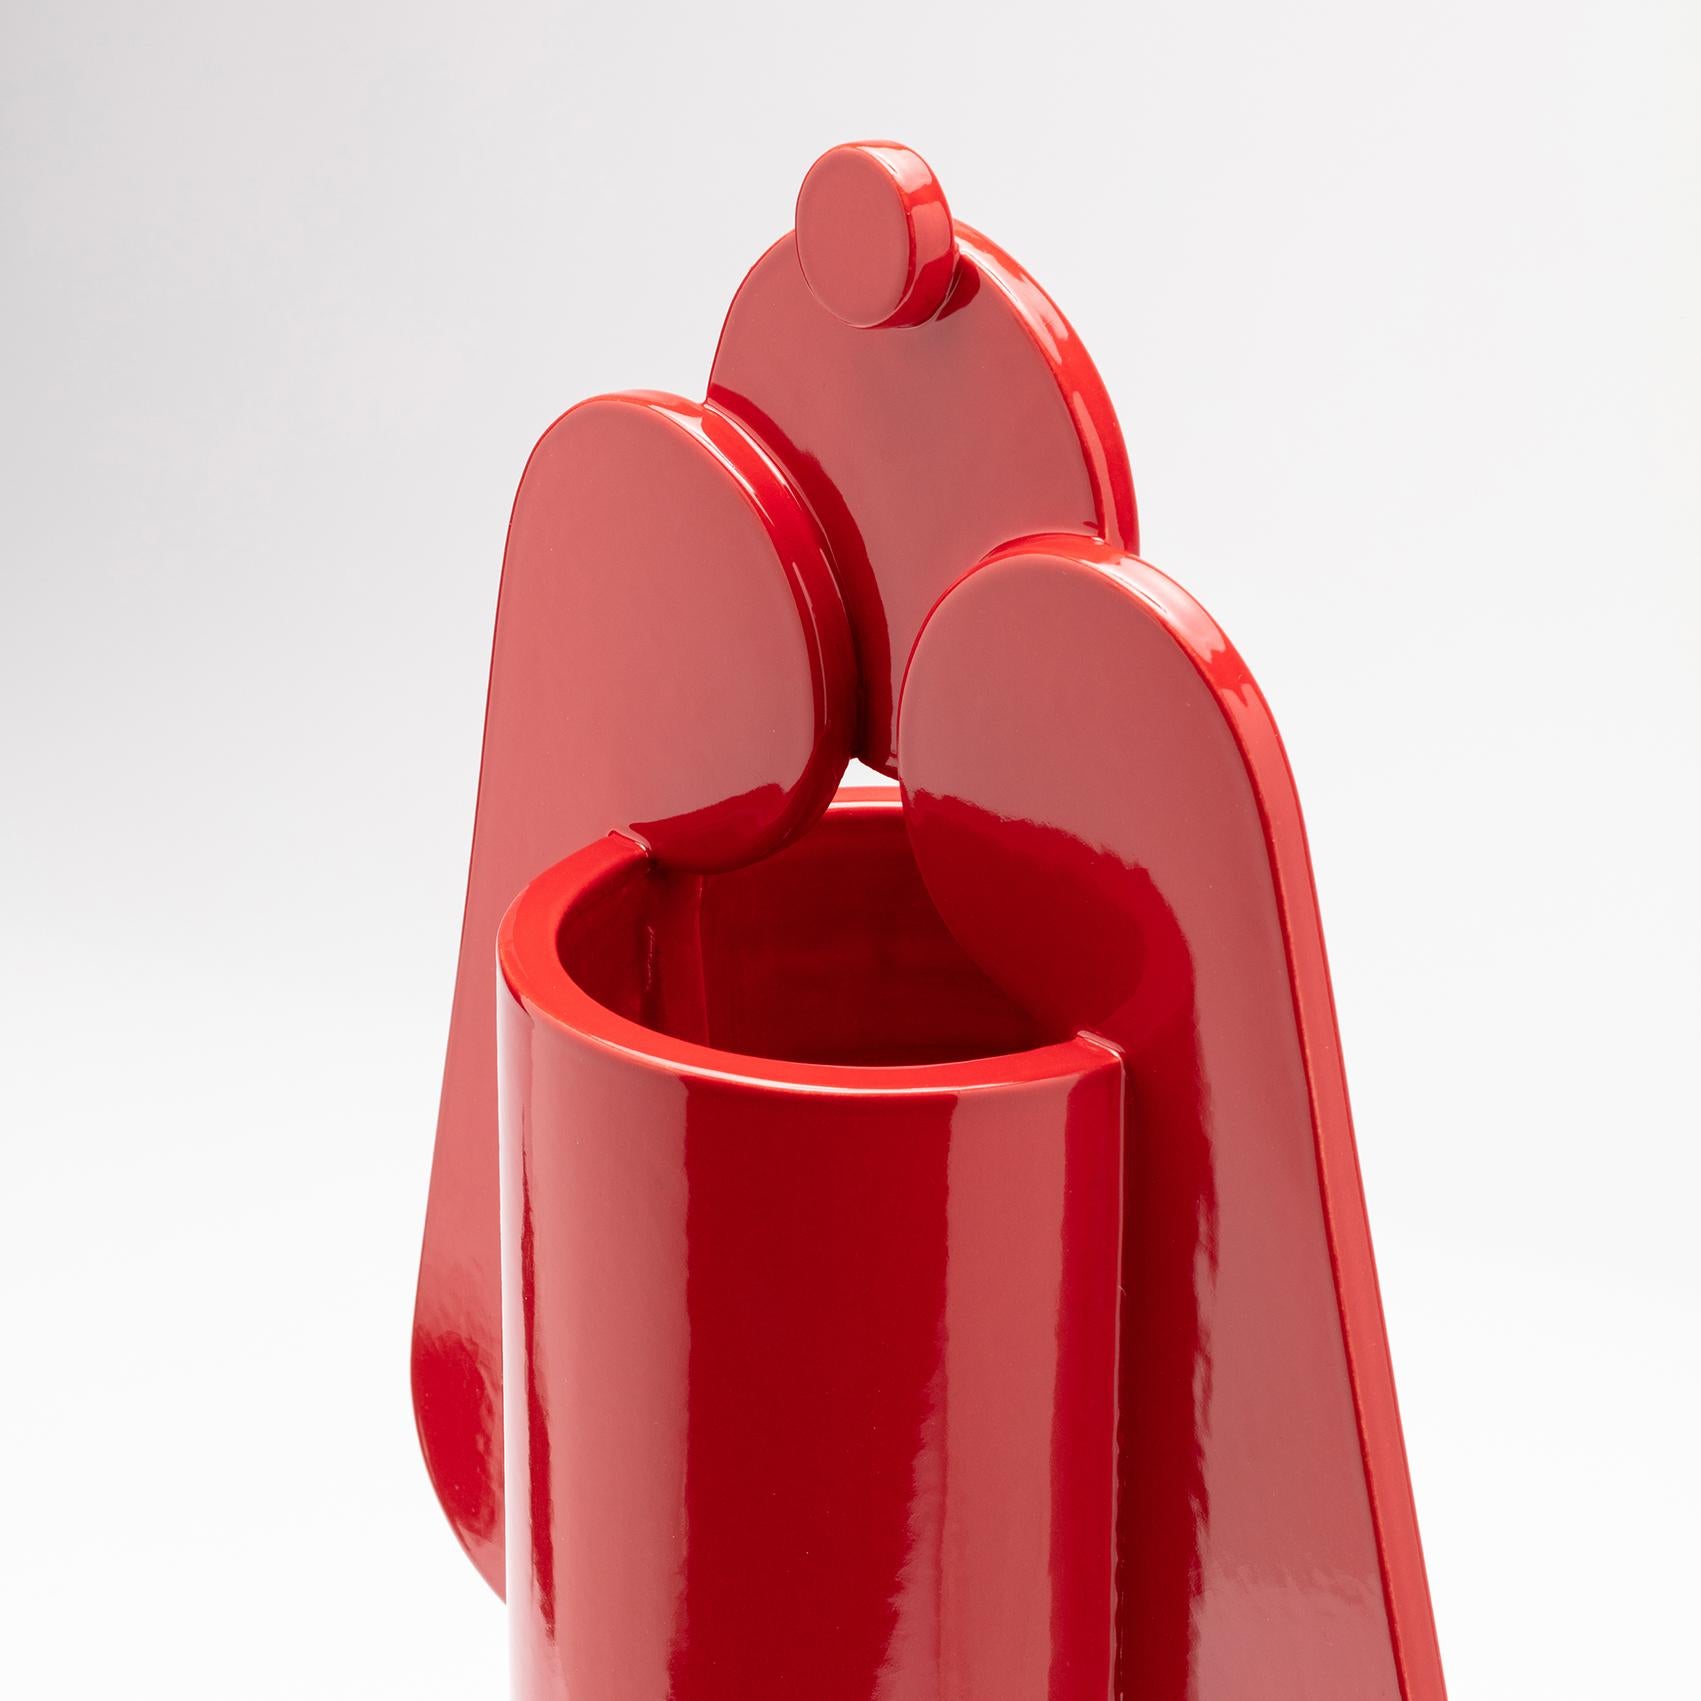 Contemporary Ceramic Set Duo Vases Red Glossy glazed CUORECARPENITO ME∞TE For Sale 2